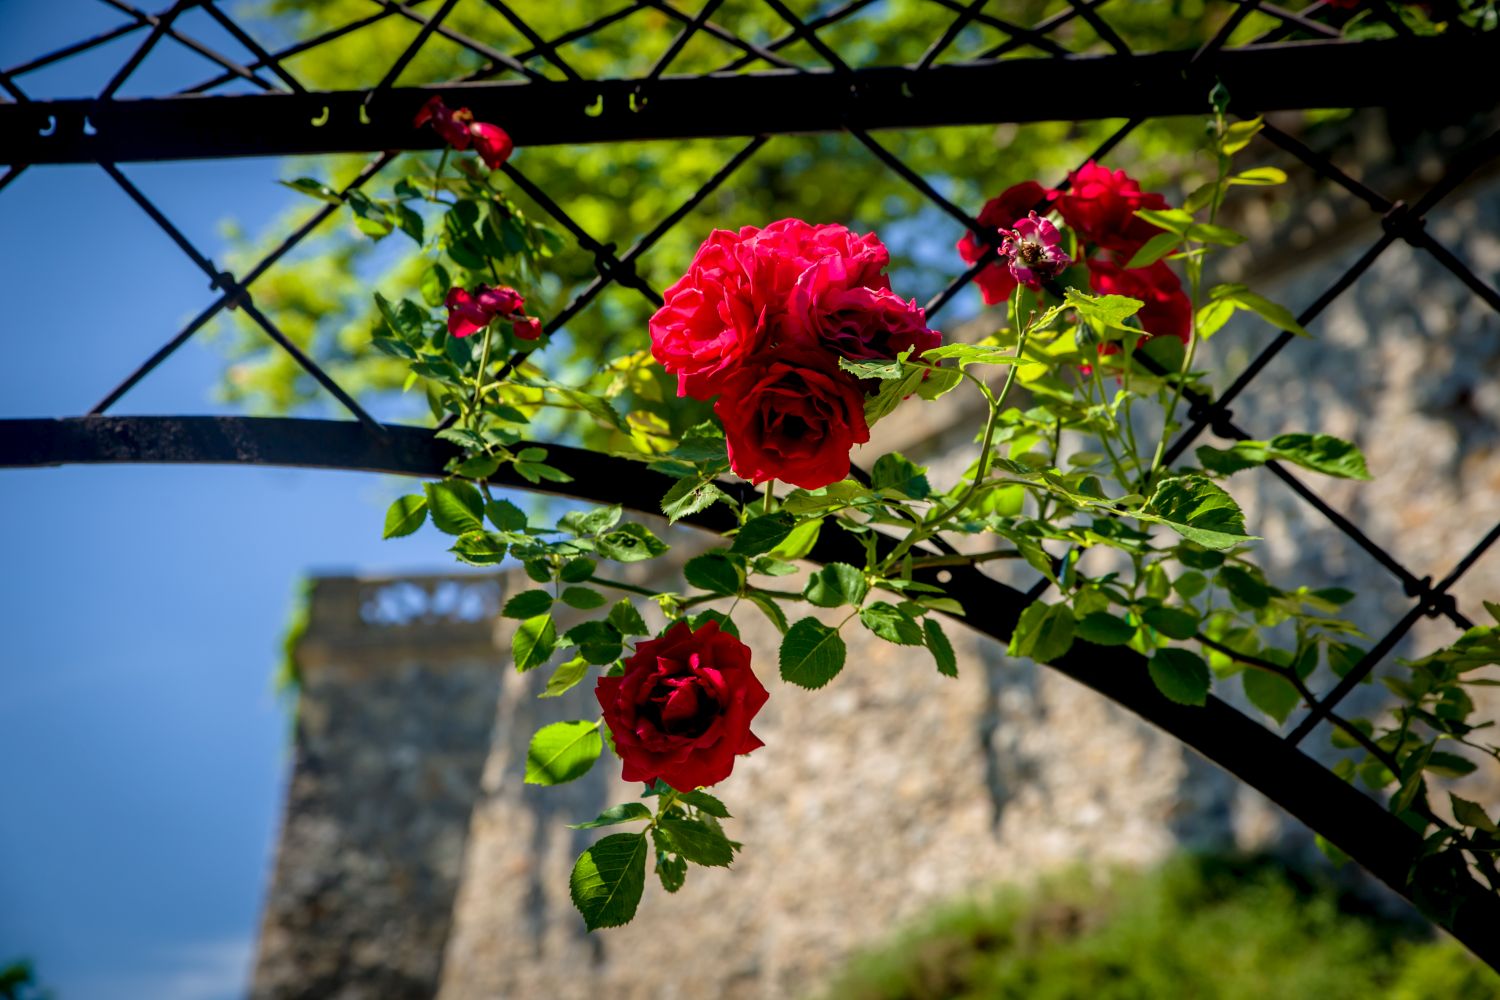 The Rose Garden in bloom